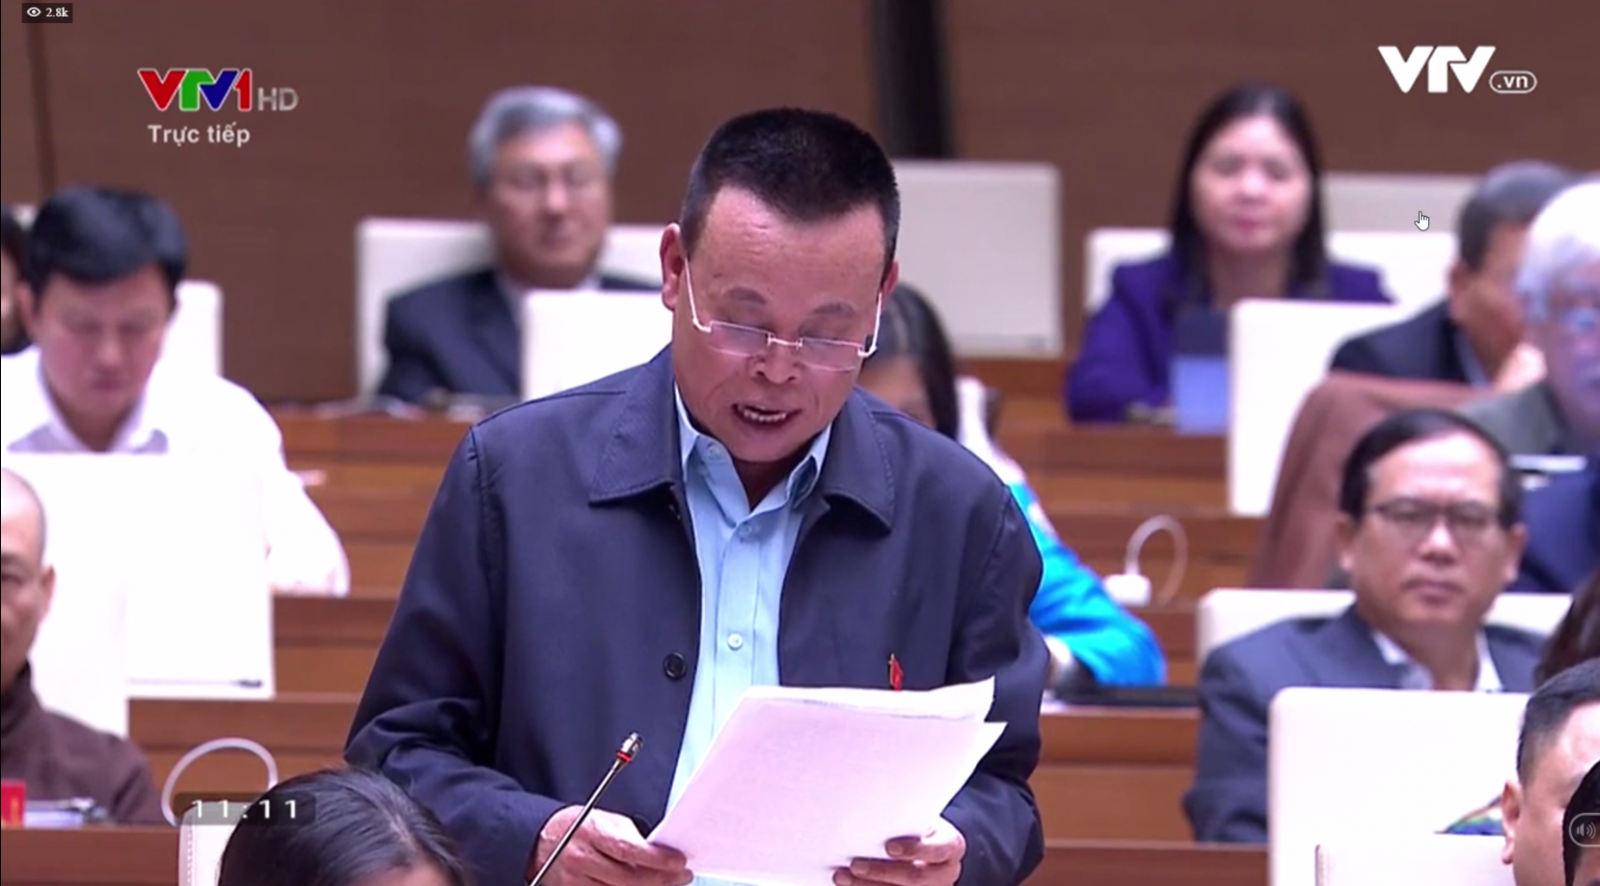 Ông Nguyễn Như So - ĐBQH tỉnh Bắc Ninh: Hỗ trợ doanh nghiệp là nhiệm vụ trọng tâm